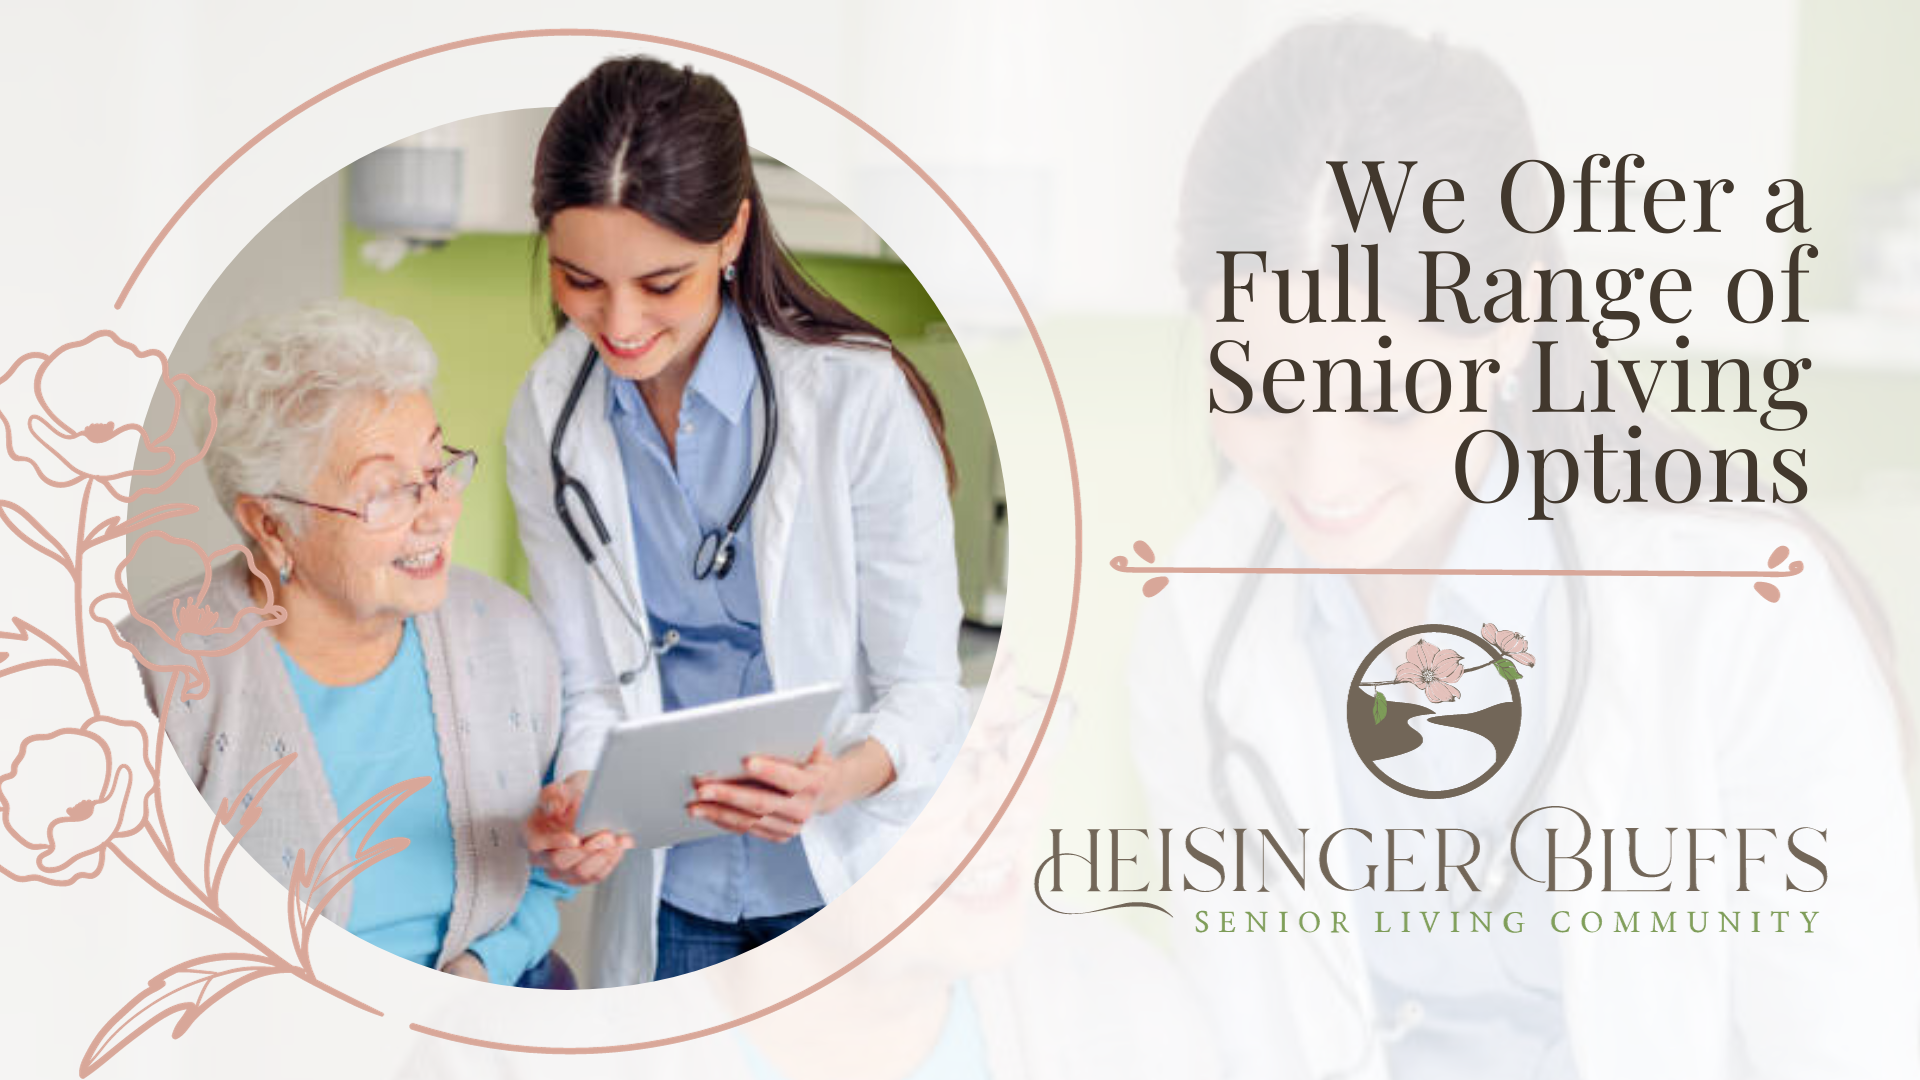 Heisinger Bluffs offer a full range of senior living options